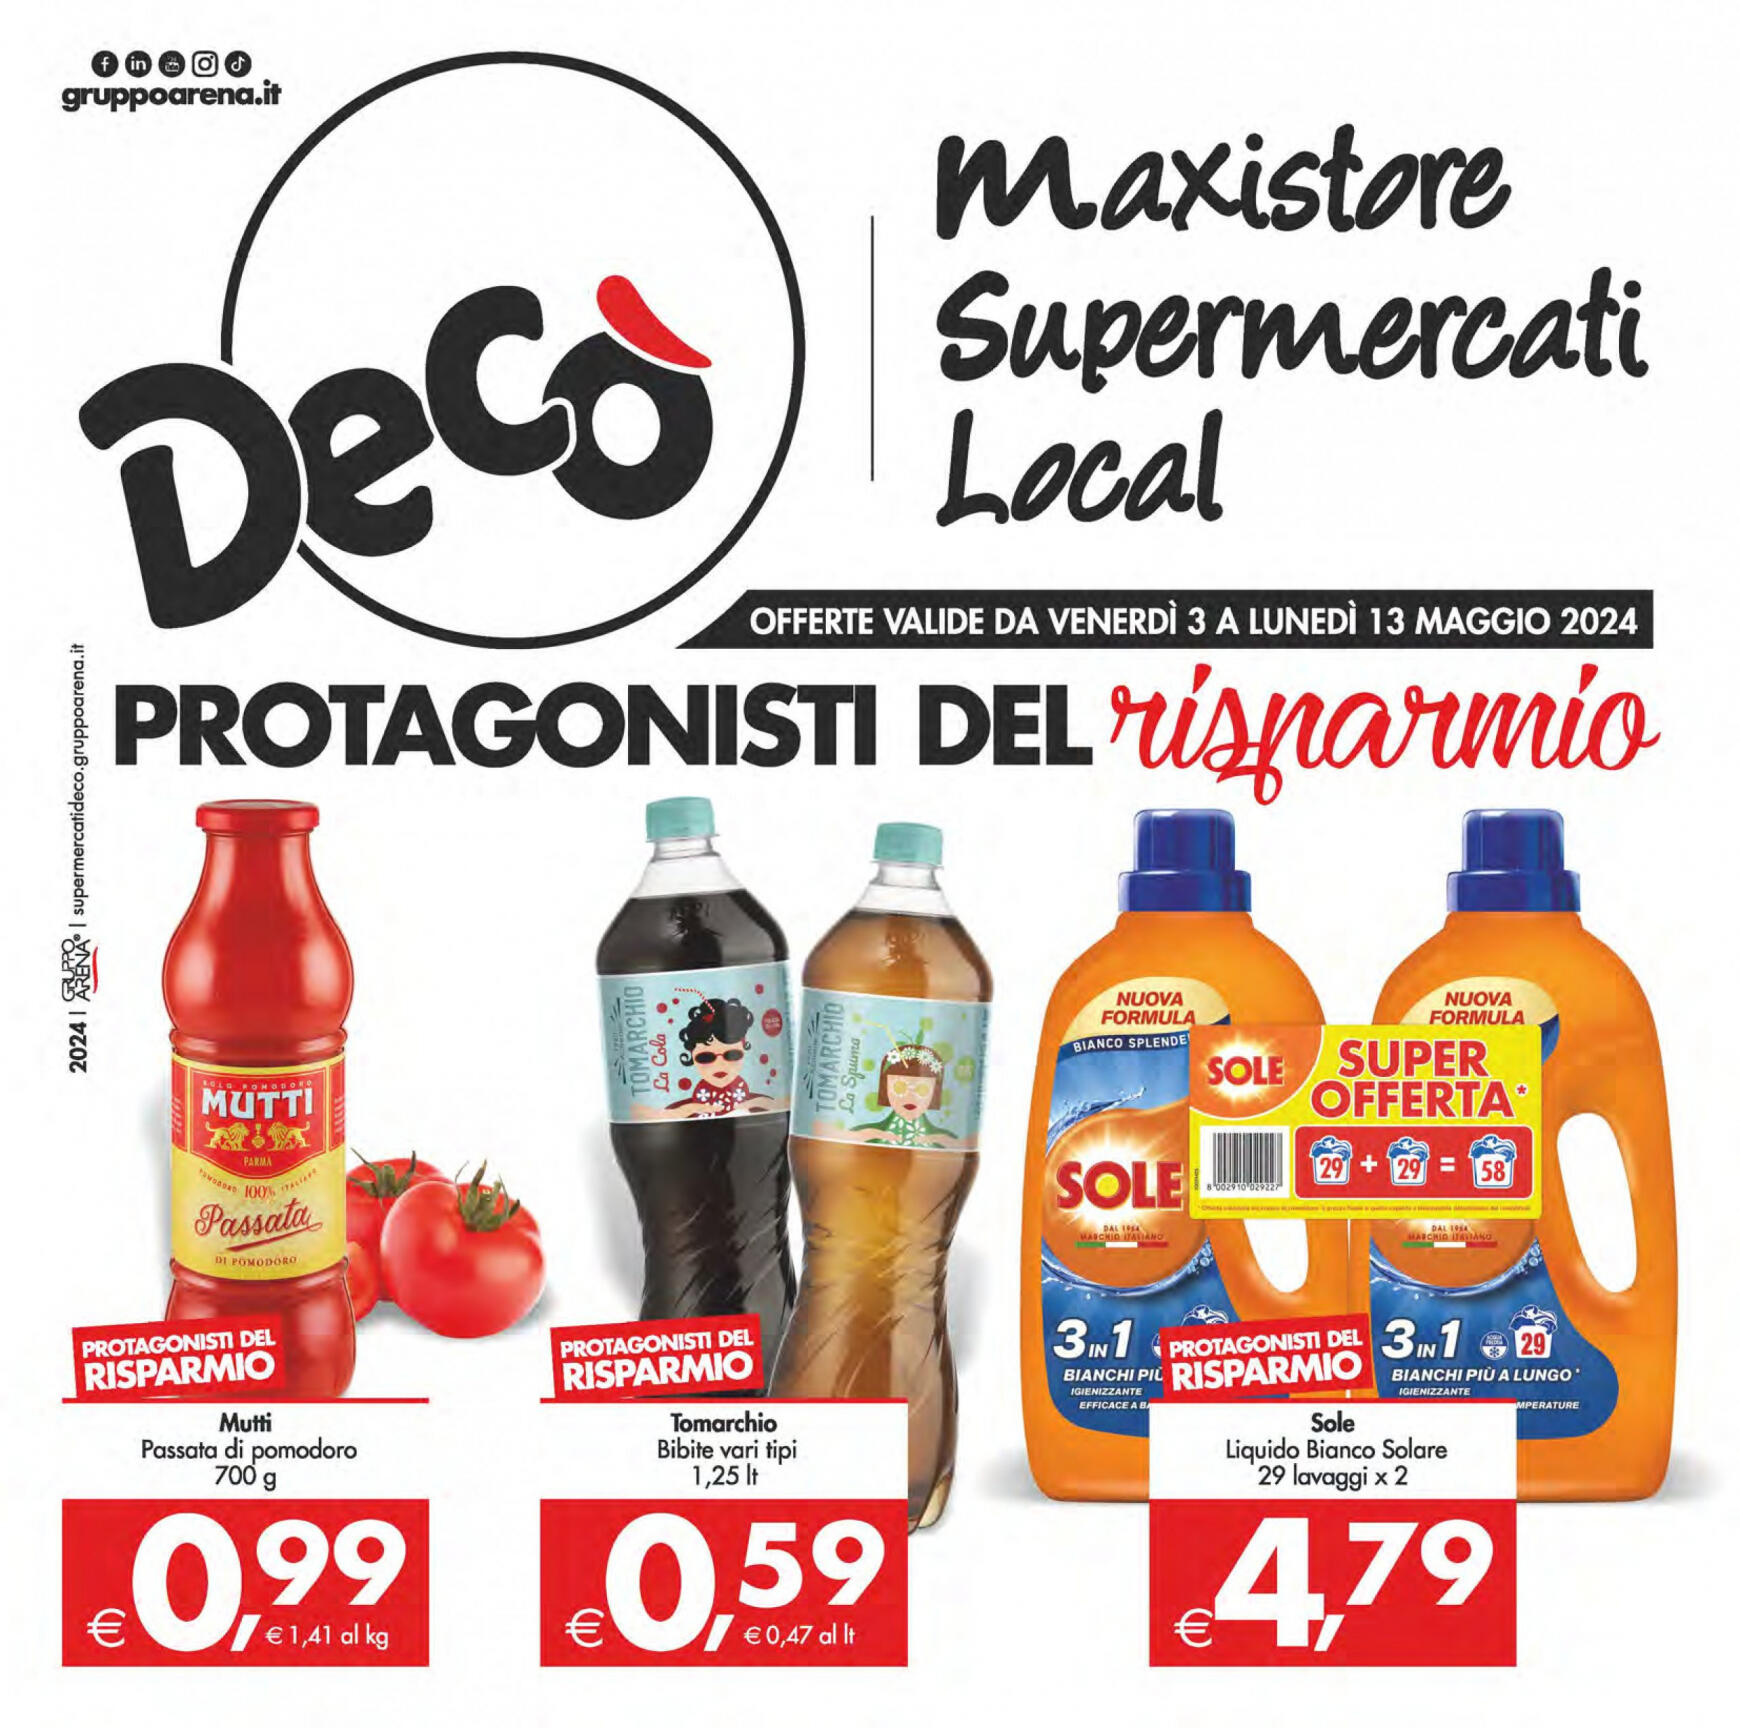 deco - Nuovo volantino Decò - Maxistore/Supermercati/Local 03.05. - 13.05.